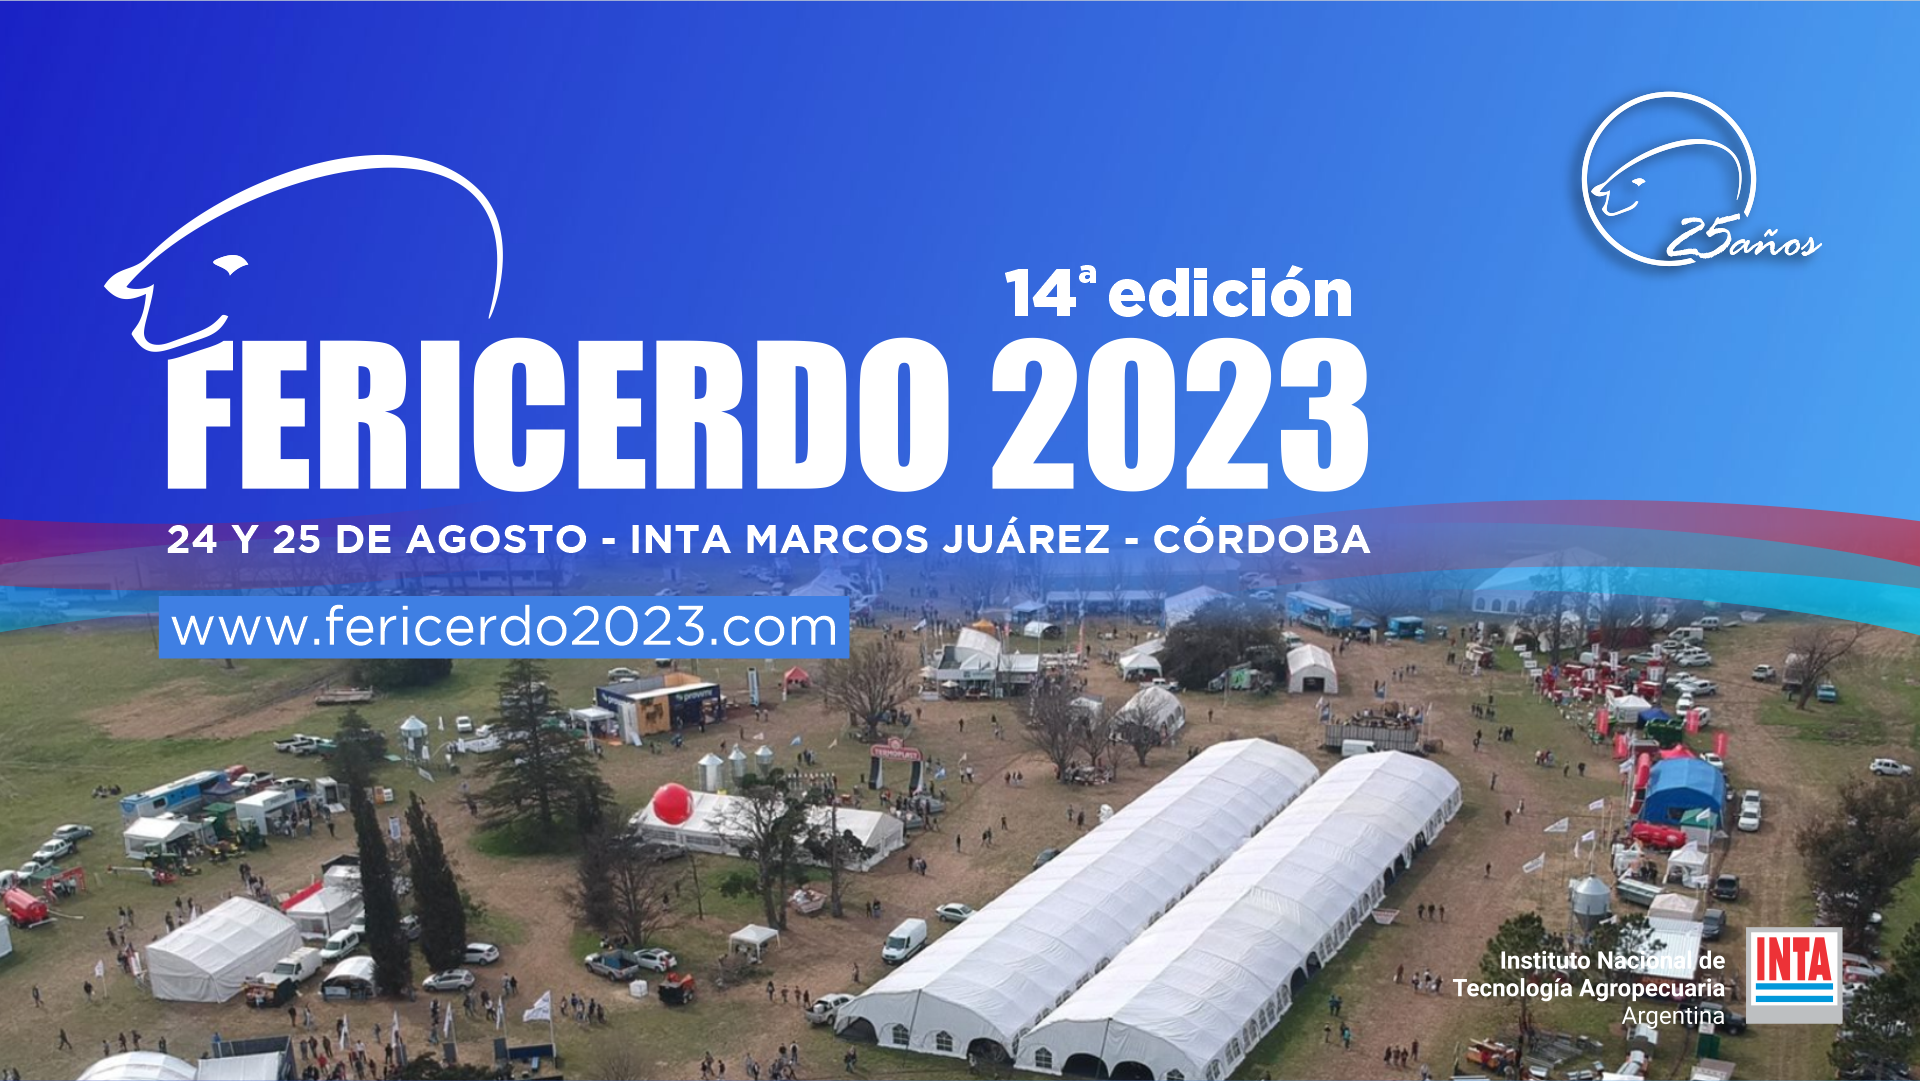 Fericerdo 2023